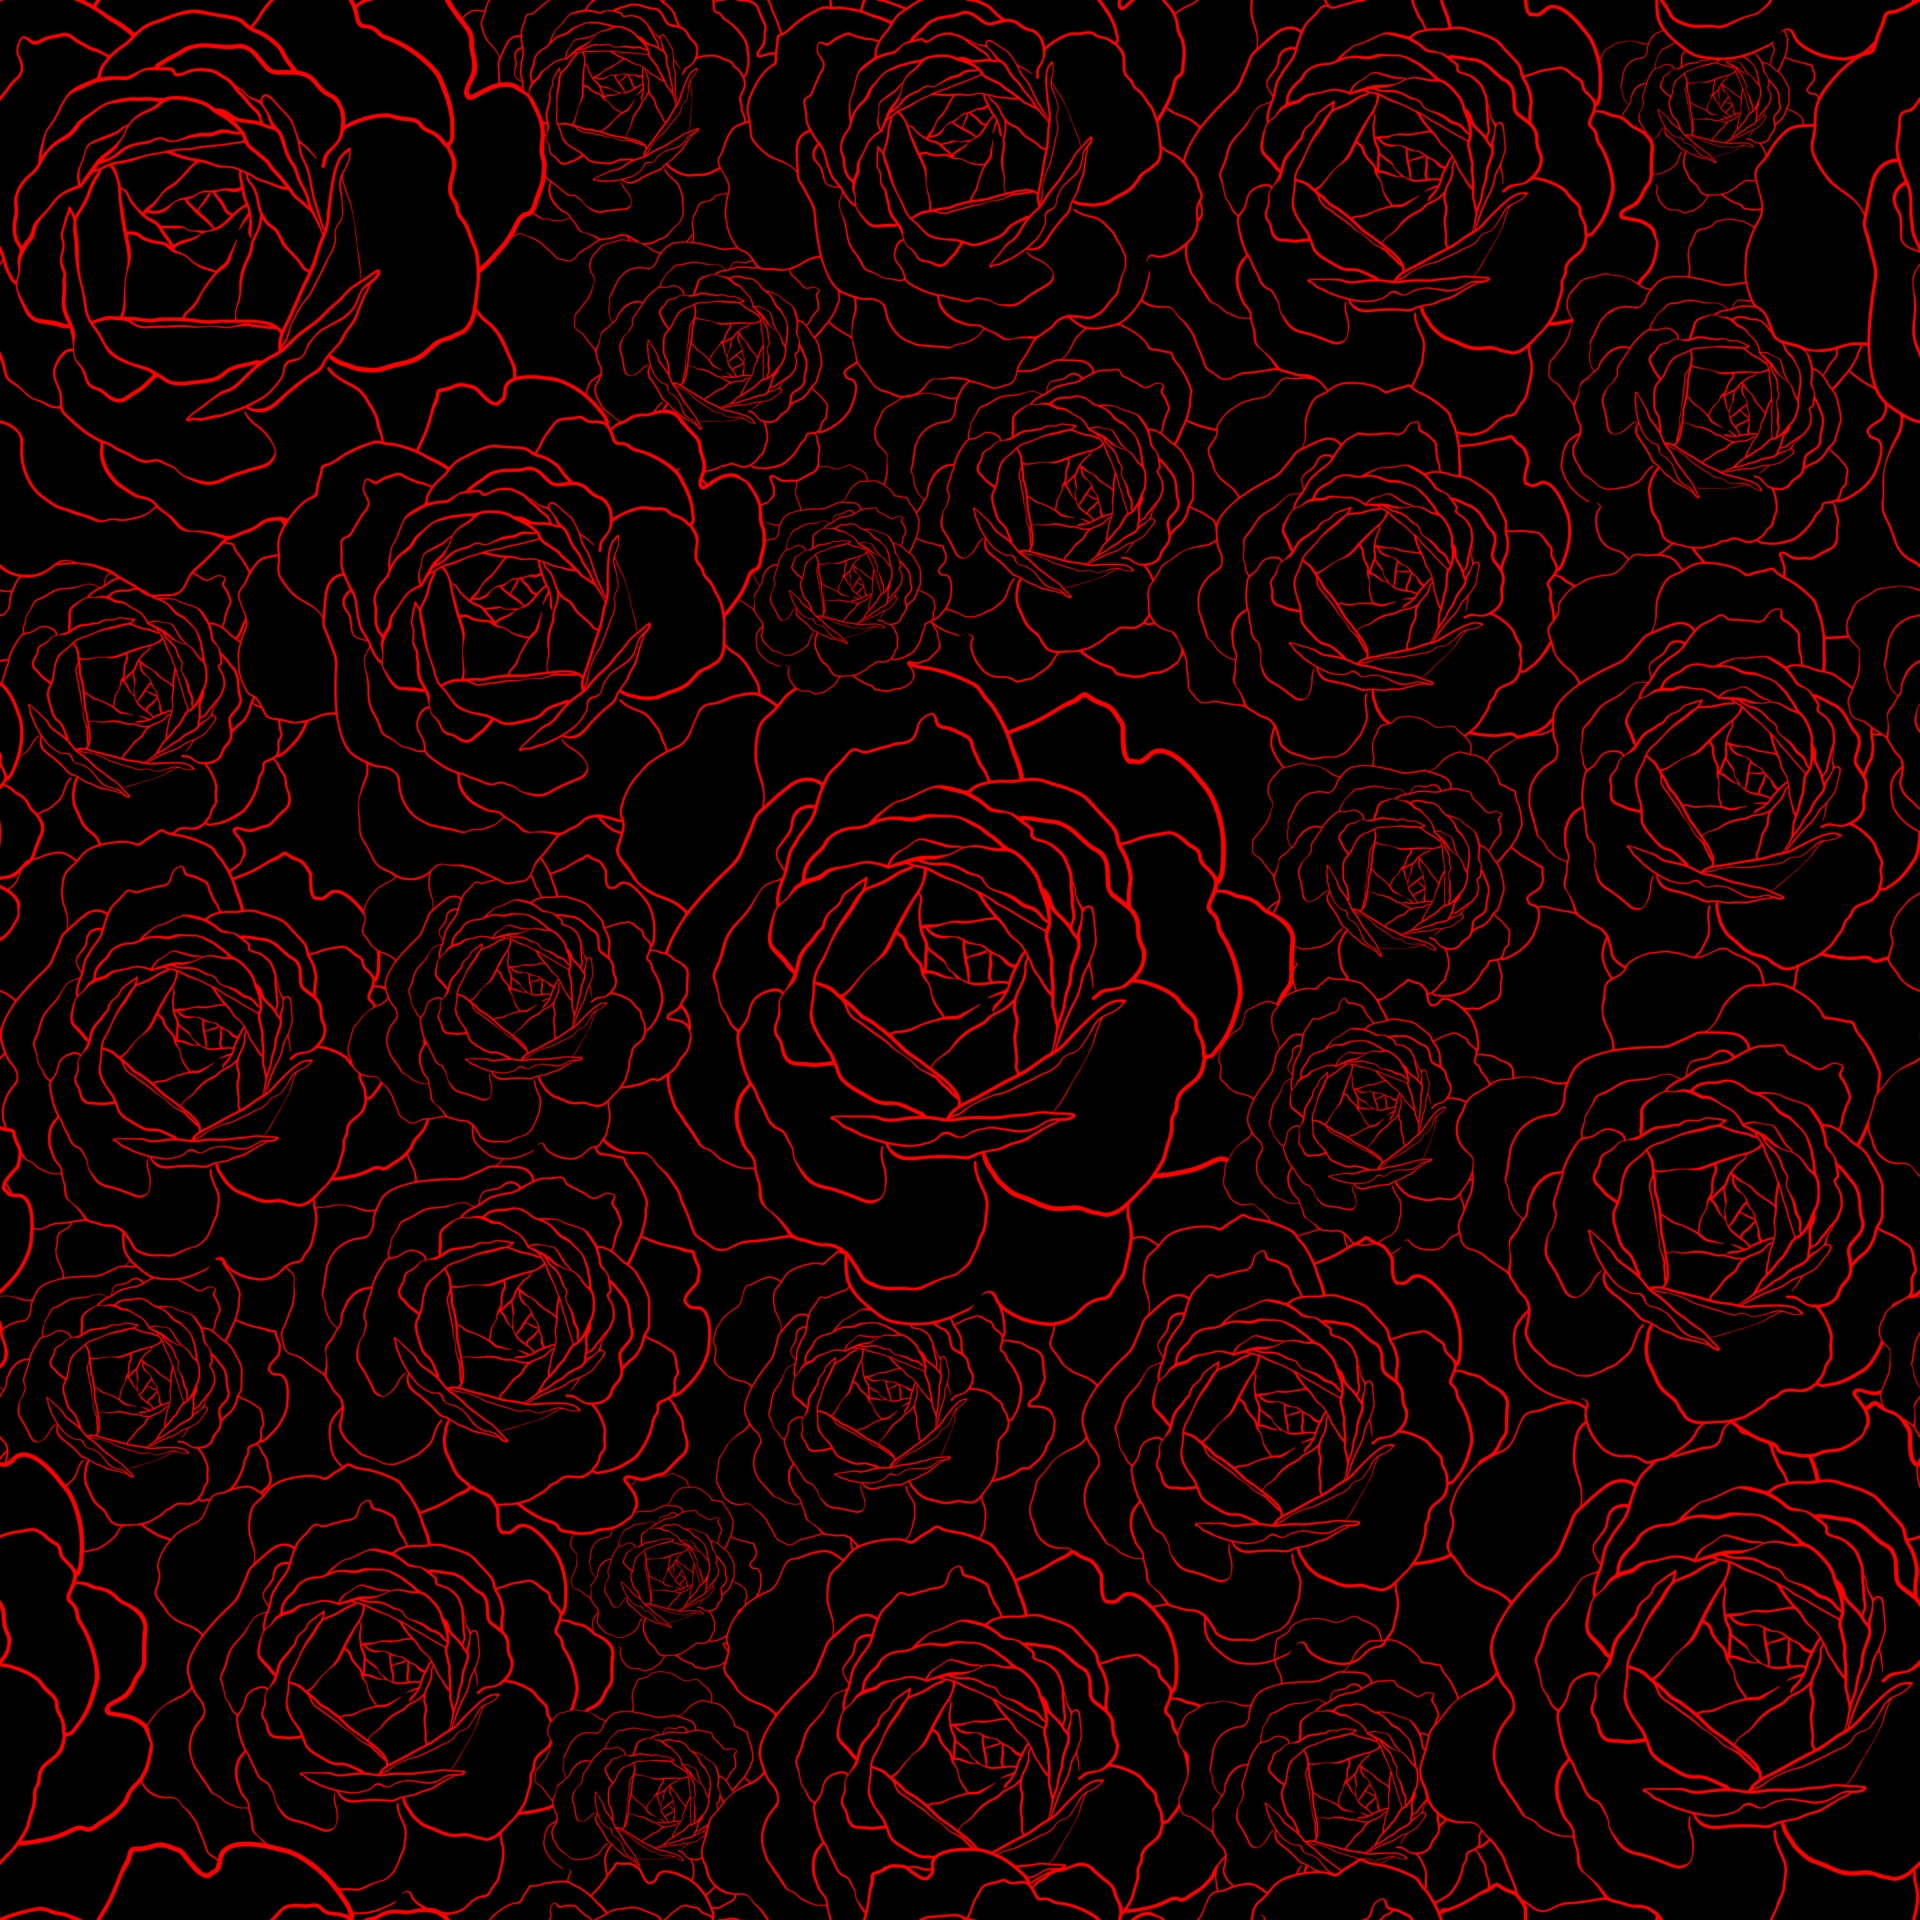 Ảnh Background black rose nền đen với hình ảnh hoa hồng đen